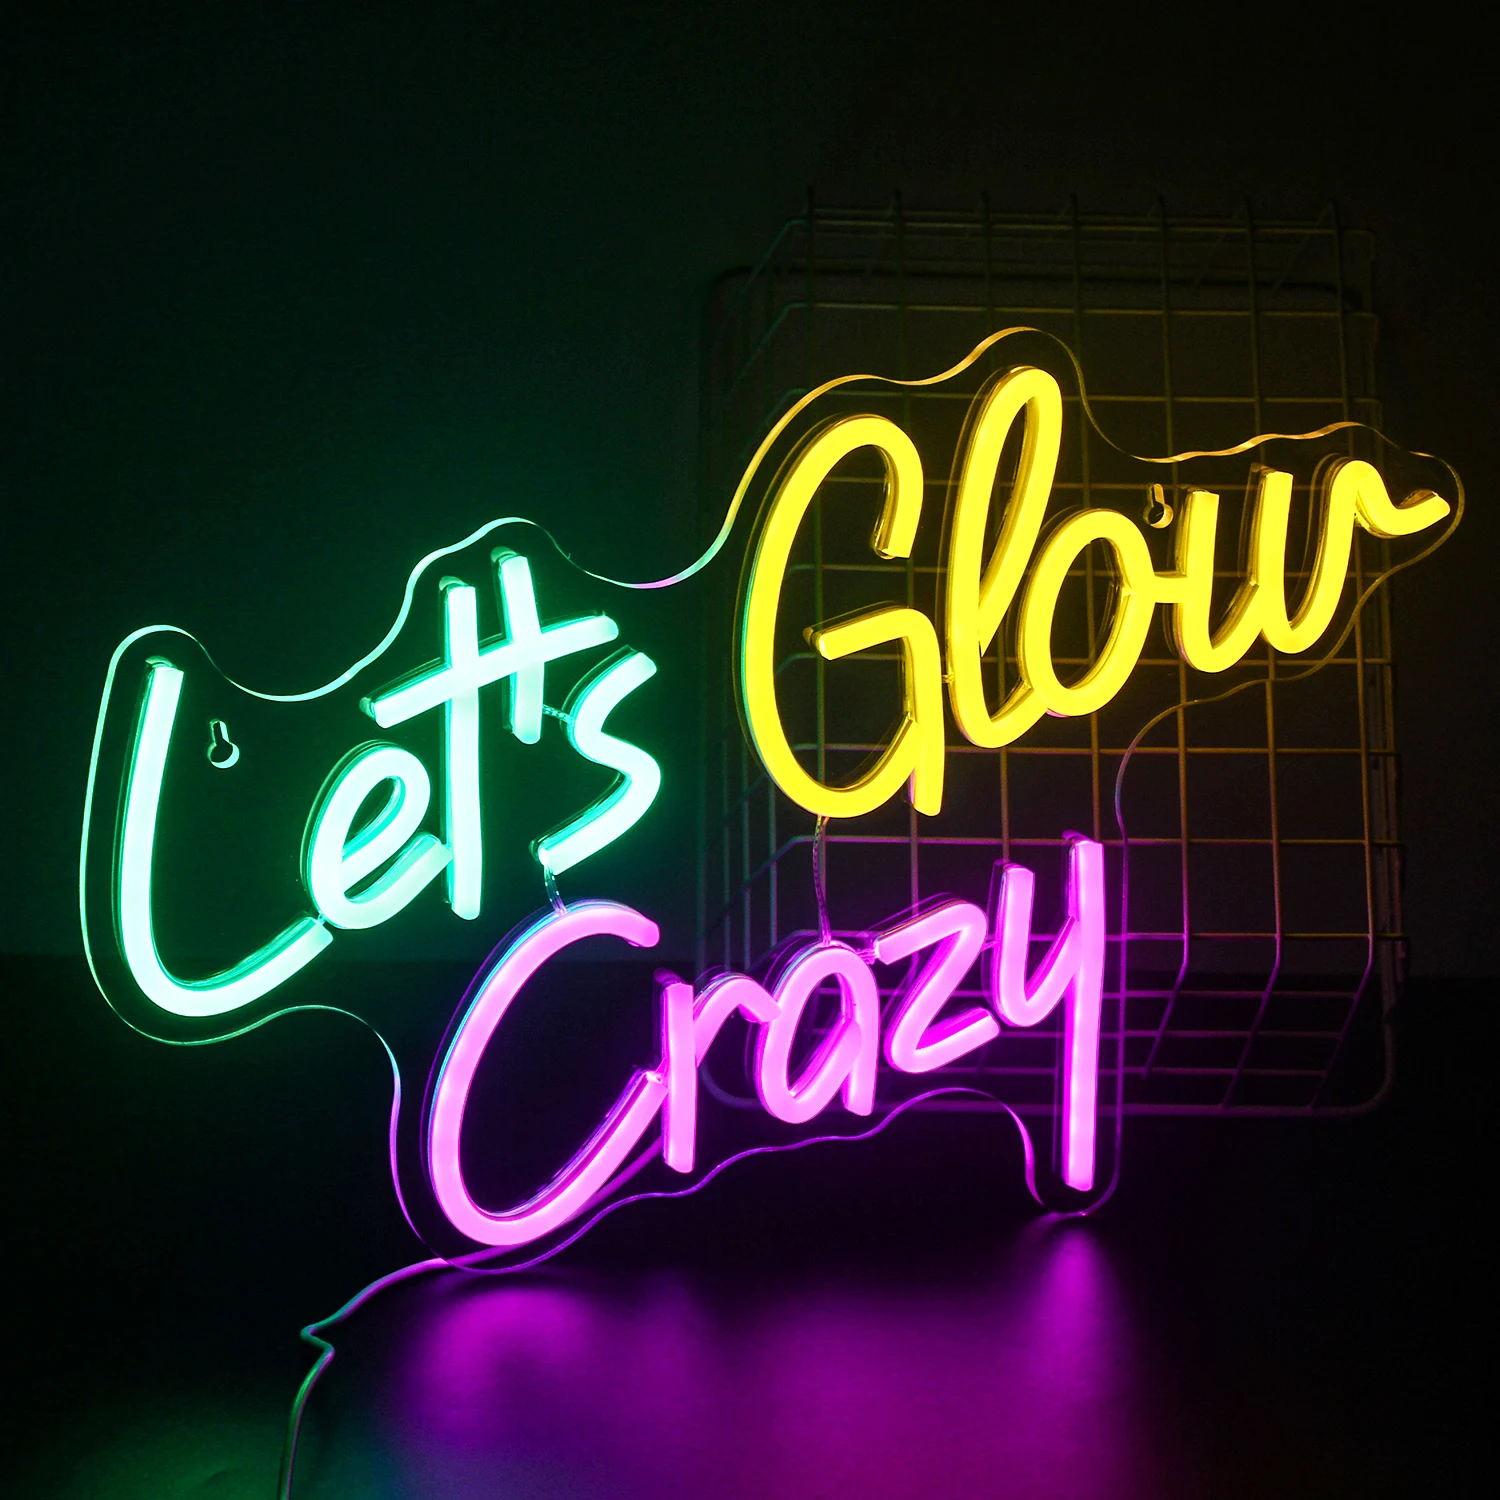 Let's Glow Neon Party Decorations Set